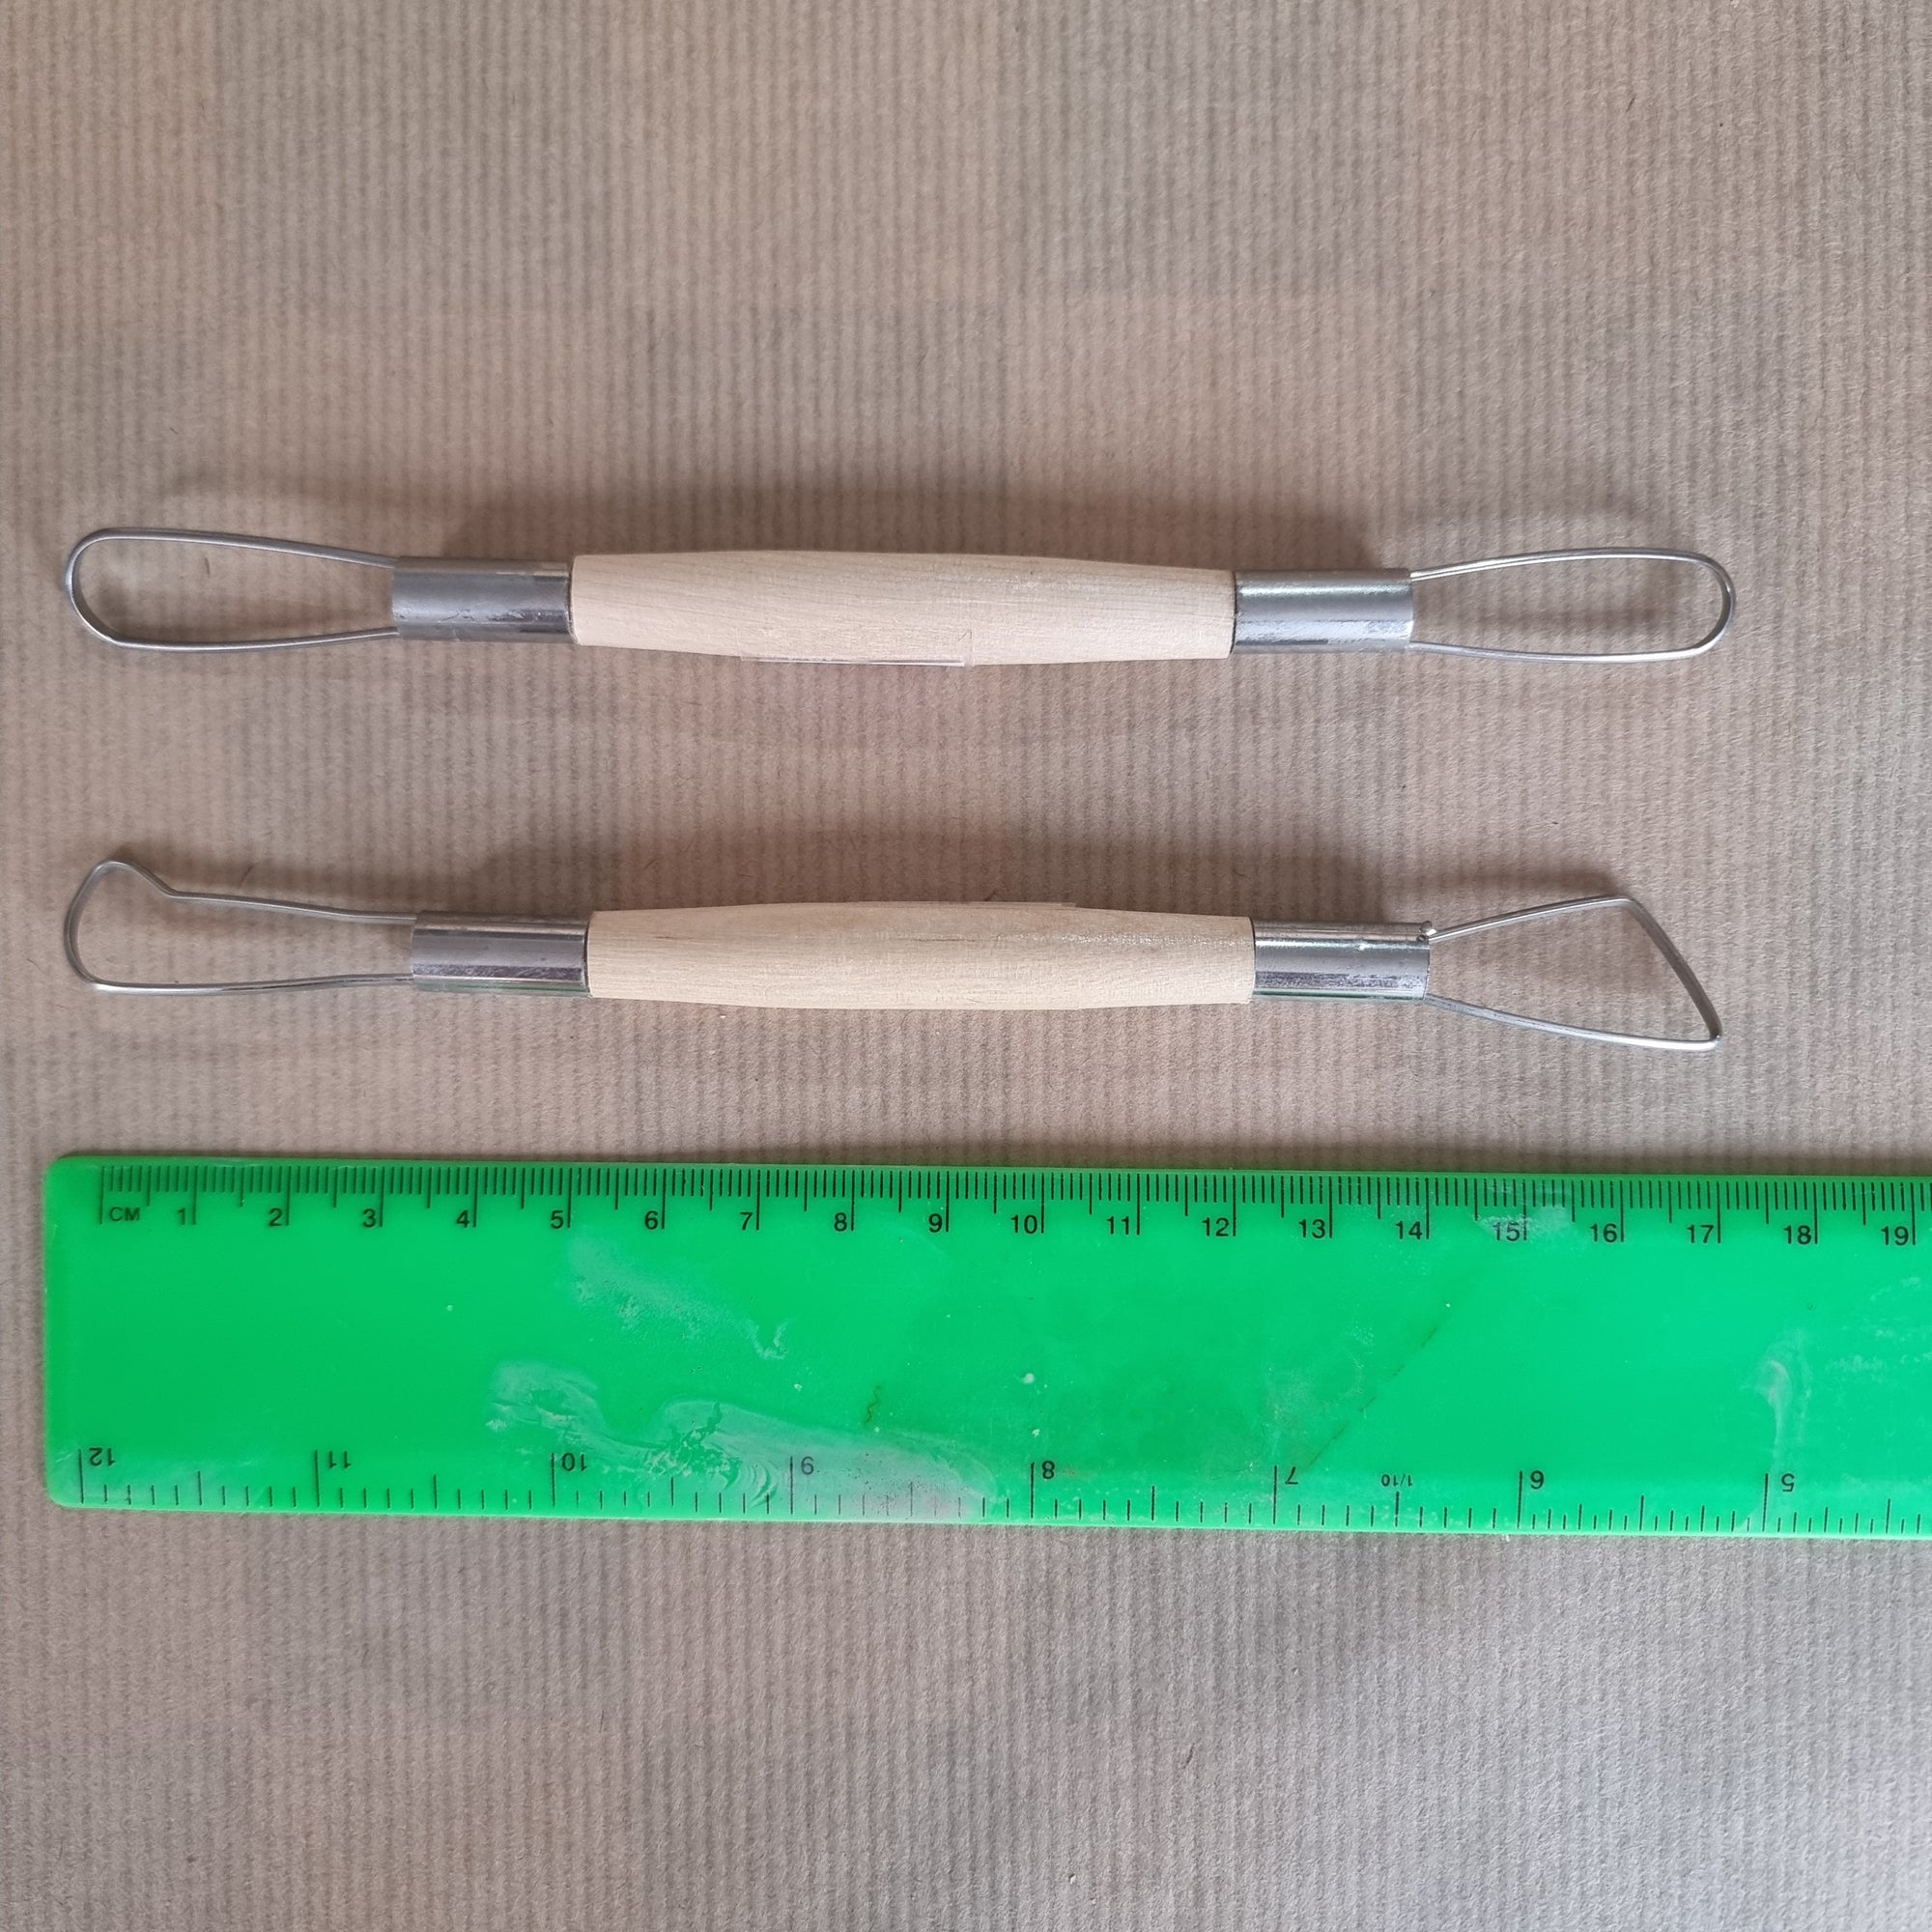 Wooden loop ribbon tools ~ 17 cm / 6.6"